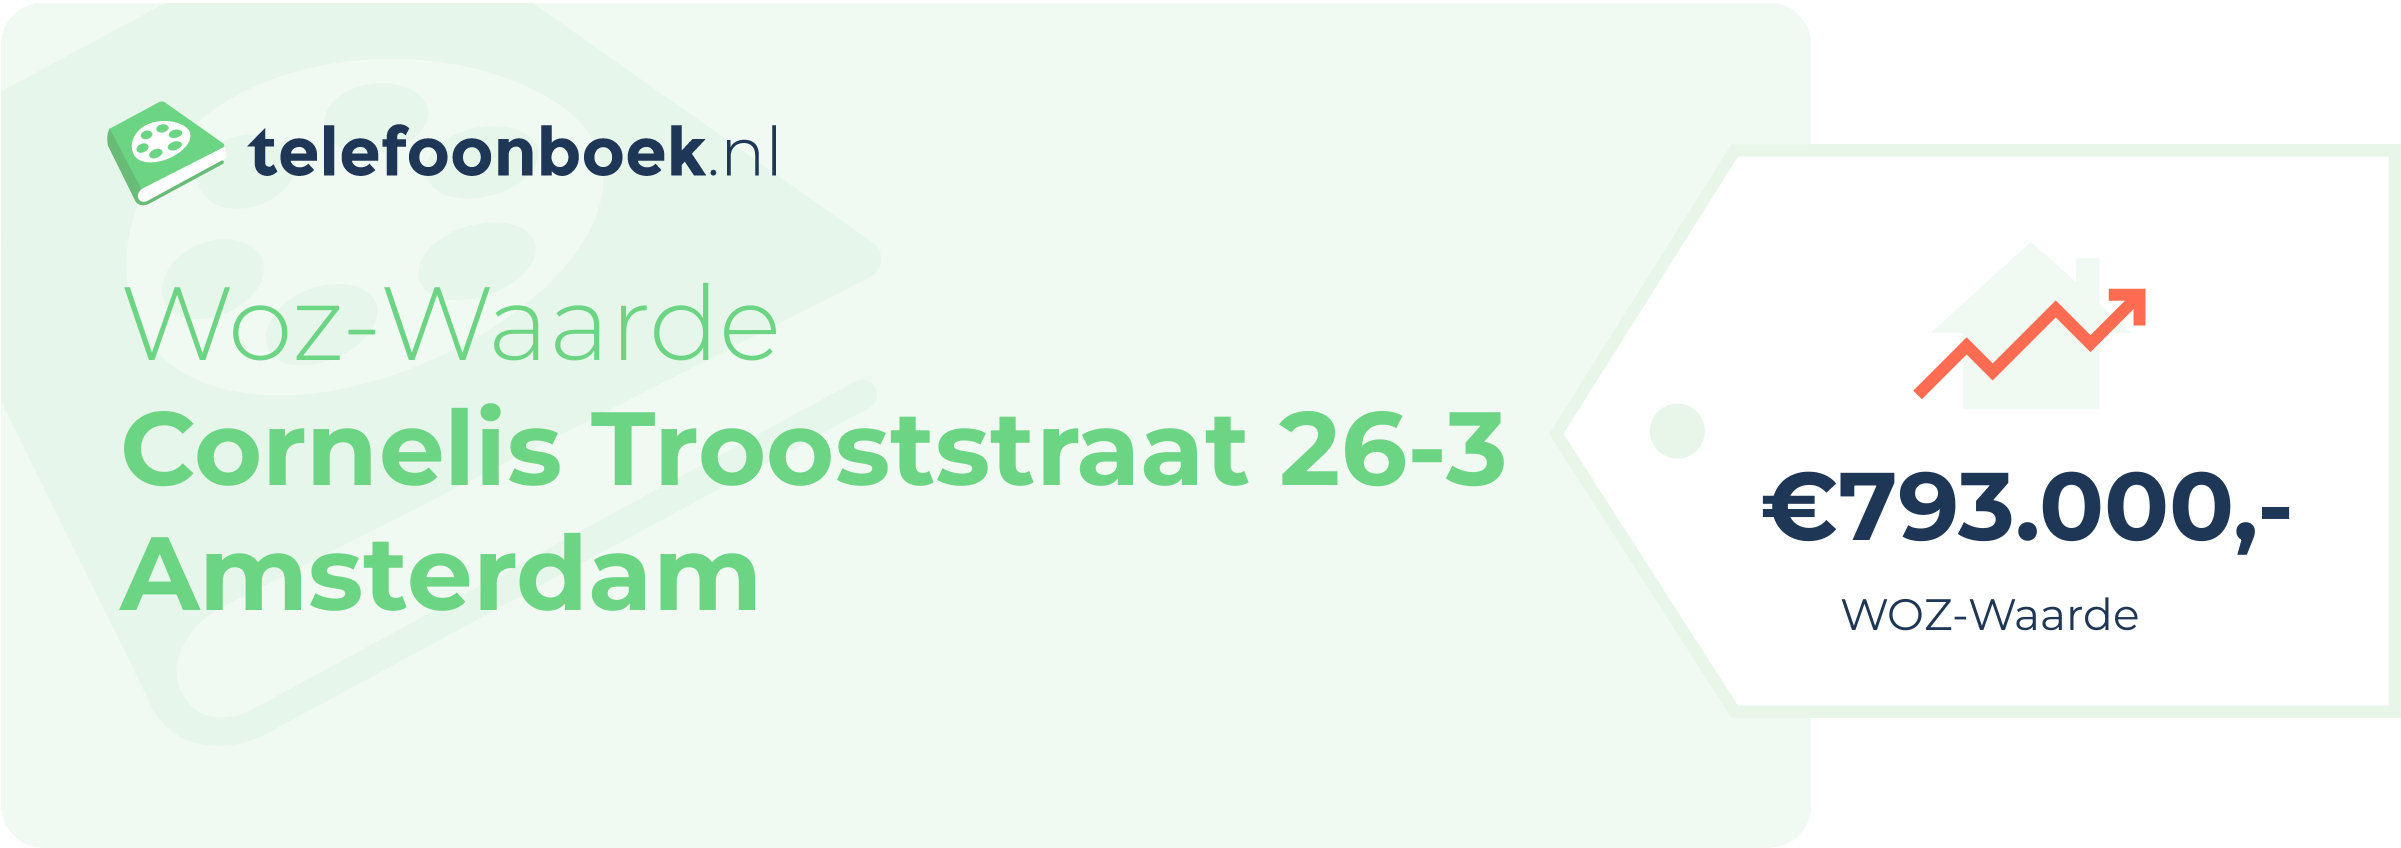 WOZ-waarde Cornelis Trooststraat 26-3 Amsterdam